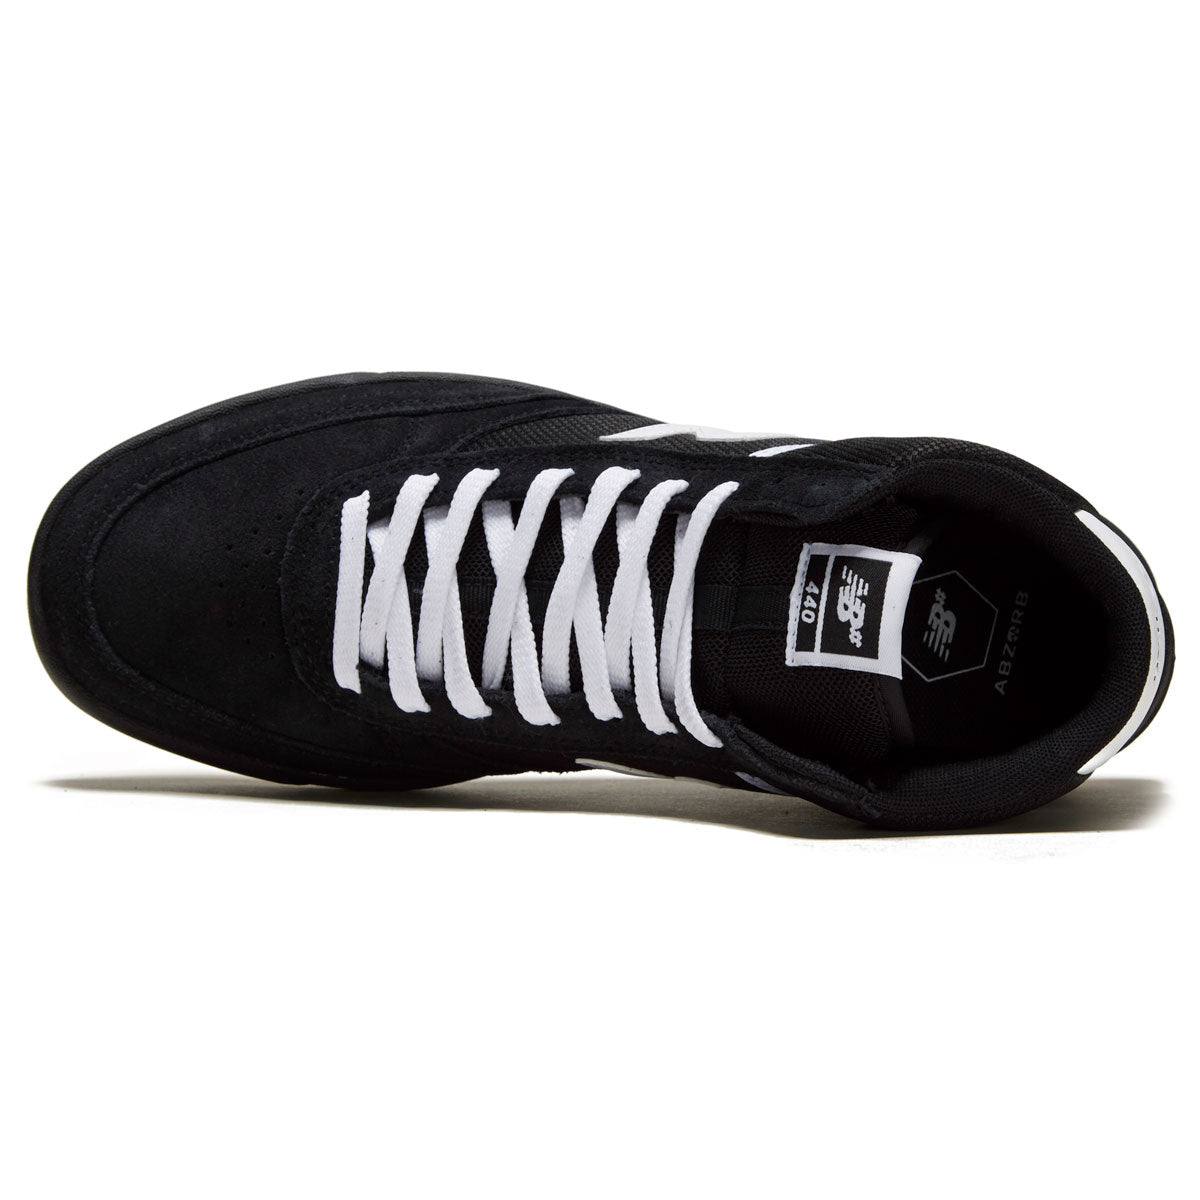 New Balance 440 Hi Shoes - Black/White image 3